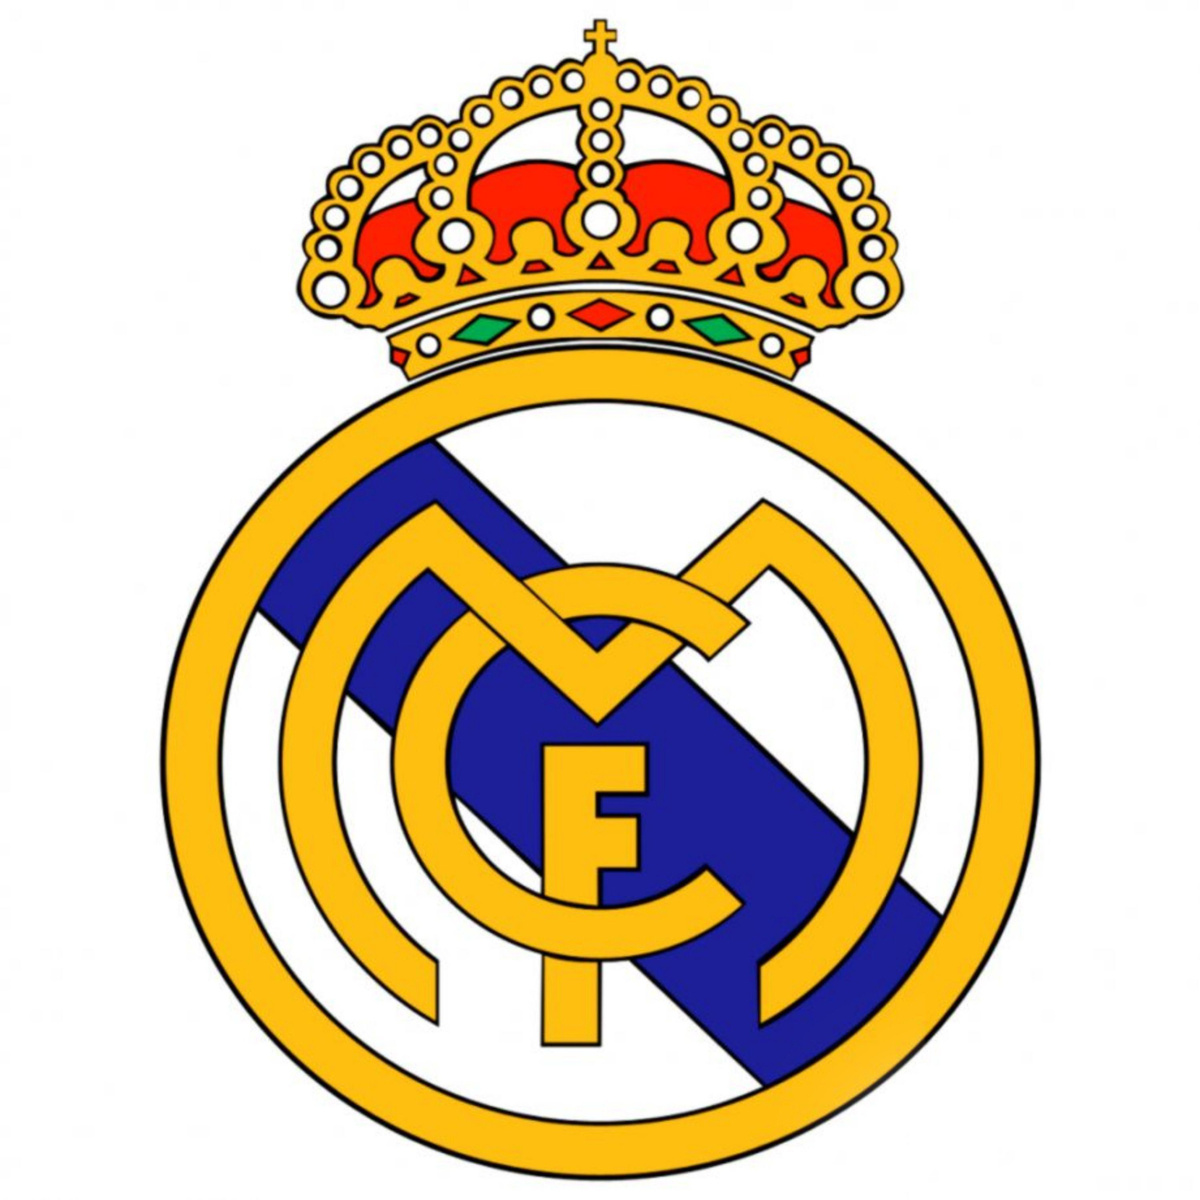 Футболка взрослая  с логотипами знаменитых футбольных клубов и сборных: Реал Мадрид (Real Madrid),. Детская футбольная форма : Месси 10 (Messi), Роналдо 7 (Ronaldo), Мбаппе (Mbappe) Неймар ( Neymar). Футболка, майка форма для взрослого из полиэстера отлично подходит для бега, для игр в футбол, как одежда для тренировок на свежем воздухе, для фитнеса, для зала. Облегающая тренировочная форма мягкая и легкая, приятная на ощупь, эластична, для удобства при тренировках. Футболка плотно прилегает к телу, отлично сохраняет тепло и отводит влагу. Футболка круглогодичная, зимой носится с термобельем.. Футболка для футбола из полиэстера износостойкий, хорошо сохраняет исходную форму, не выцветает, не растягивается и прослужит долго. Отличный подарок мужчине, женщине на день рождения и Новый год!